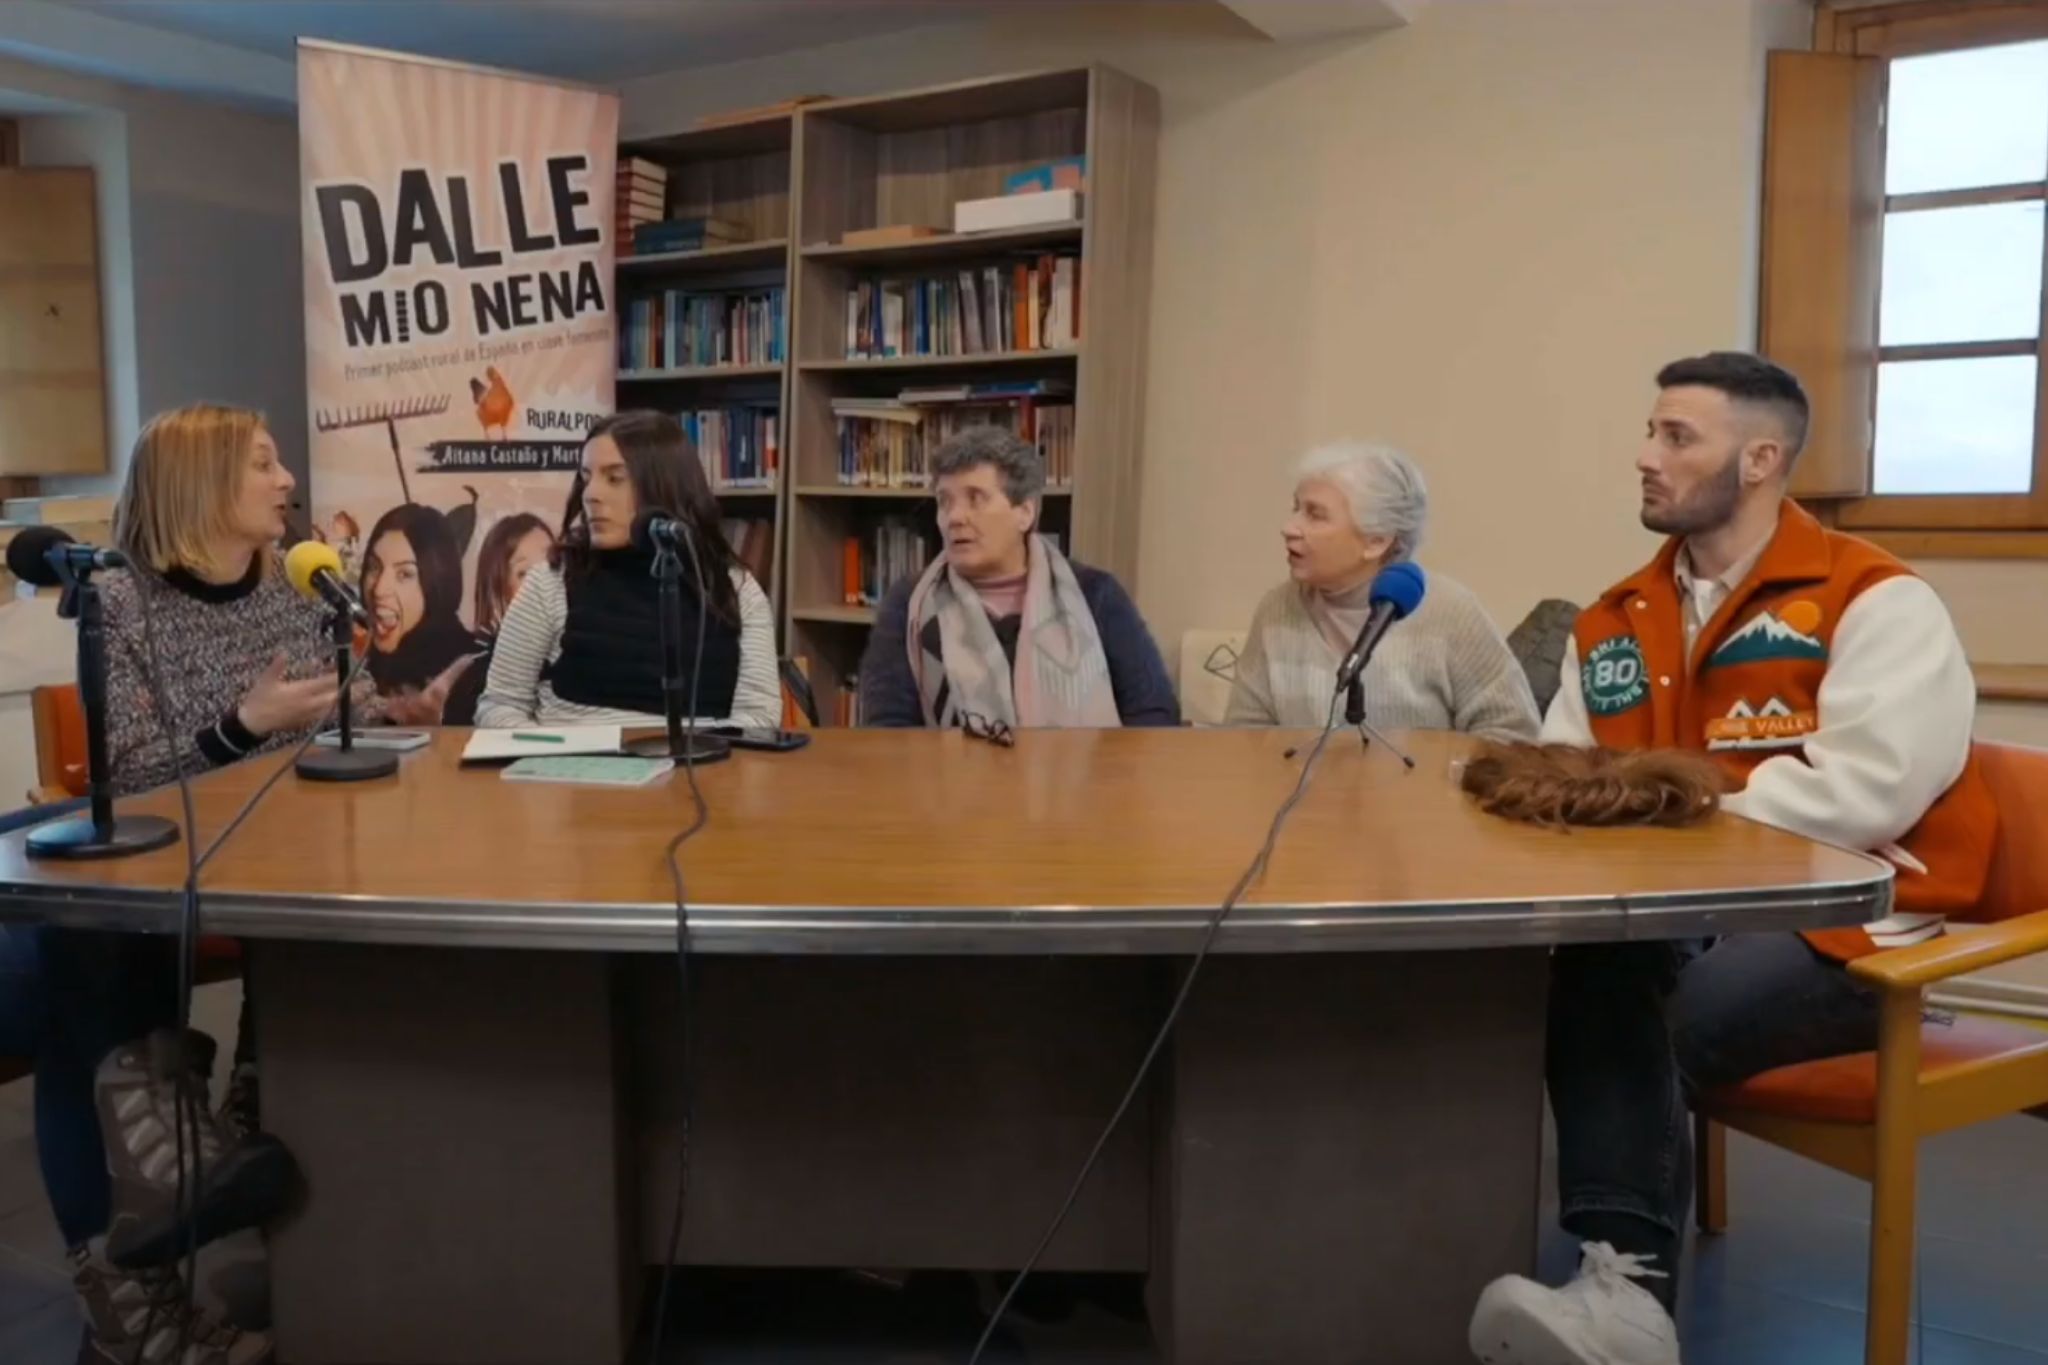 Dalle Mio Nena en el programa Brigada Tech de TVE presentado por Luján Argüelles